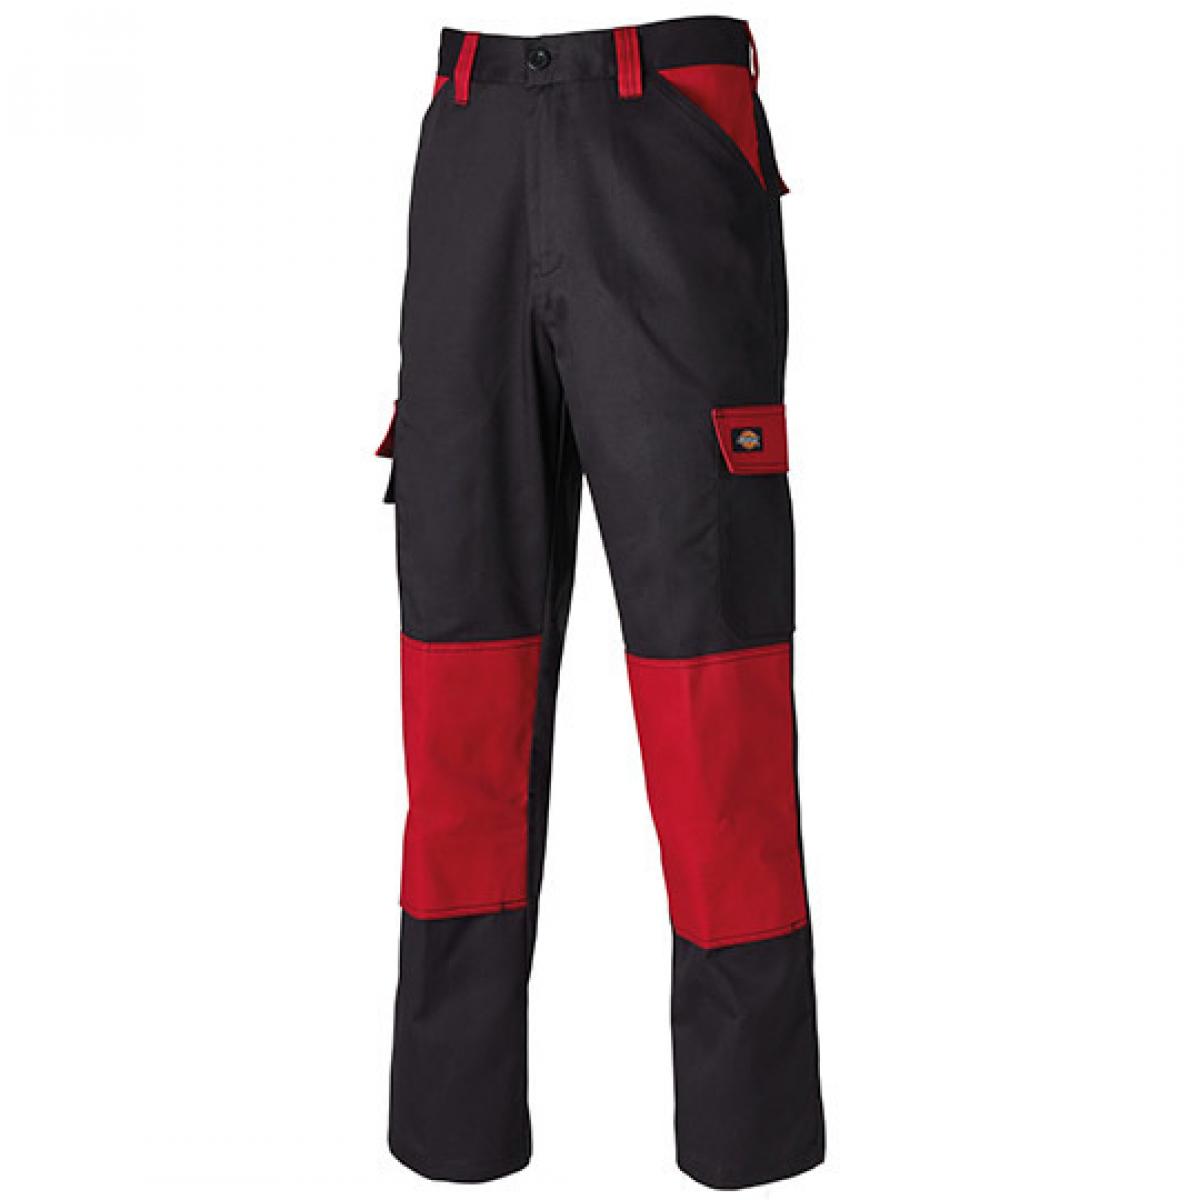 Hersteller: Dickies Herstellernummer: ED24/7 Artikelbezeichnung: Everyday Workwear Bundhose - ED24/7 Farbe: Black/Red